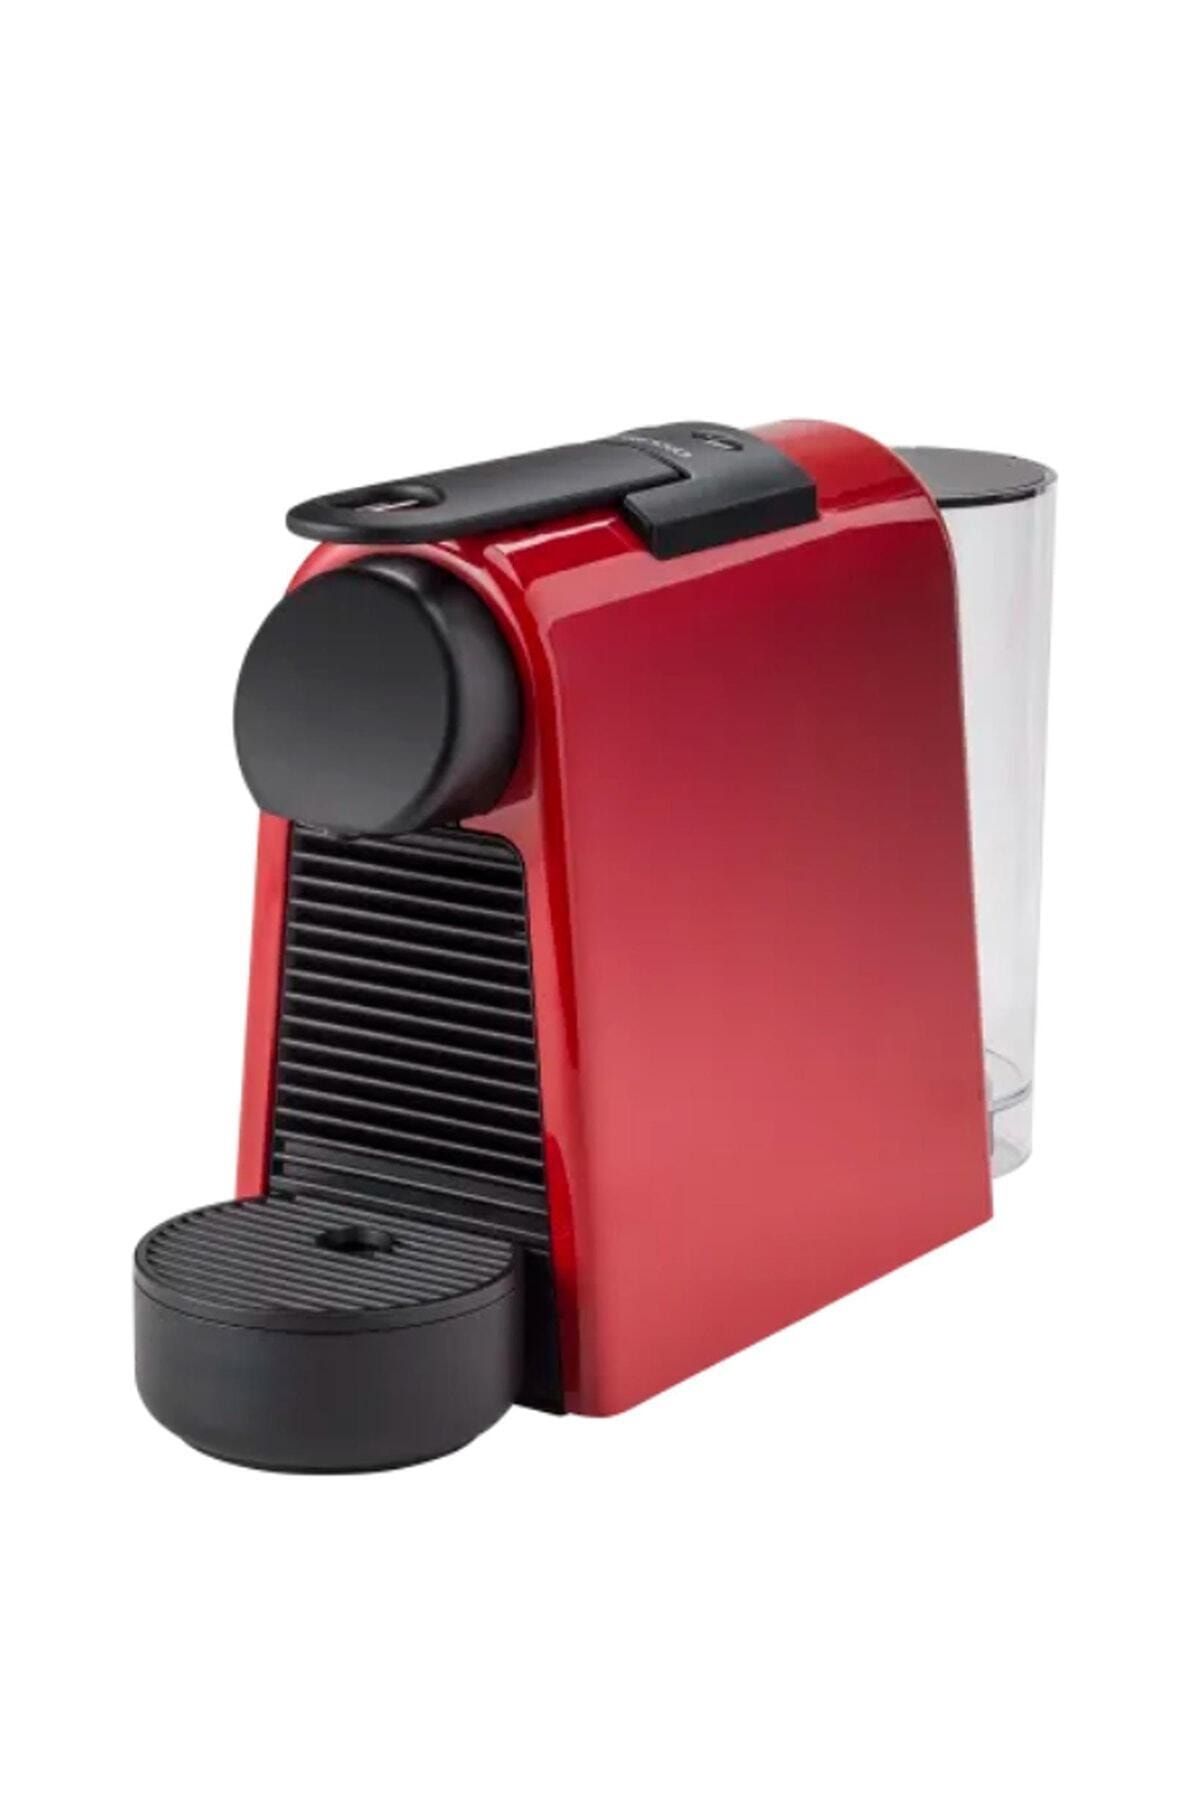 Nespresso D30 Essenza Mini Kapsüllü Kahve Makinesi Kırmızı 56KMK014249